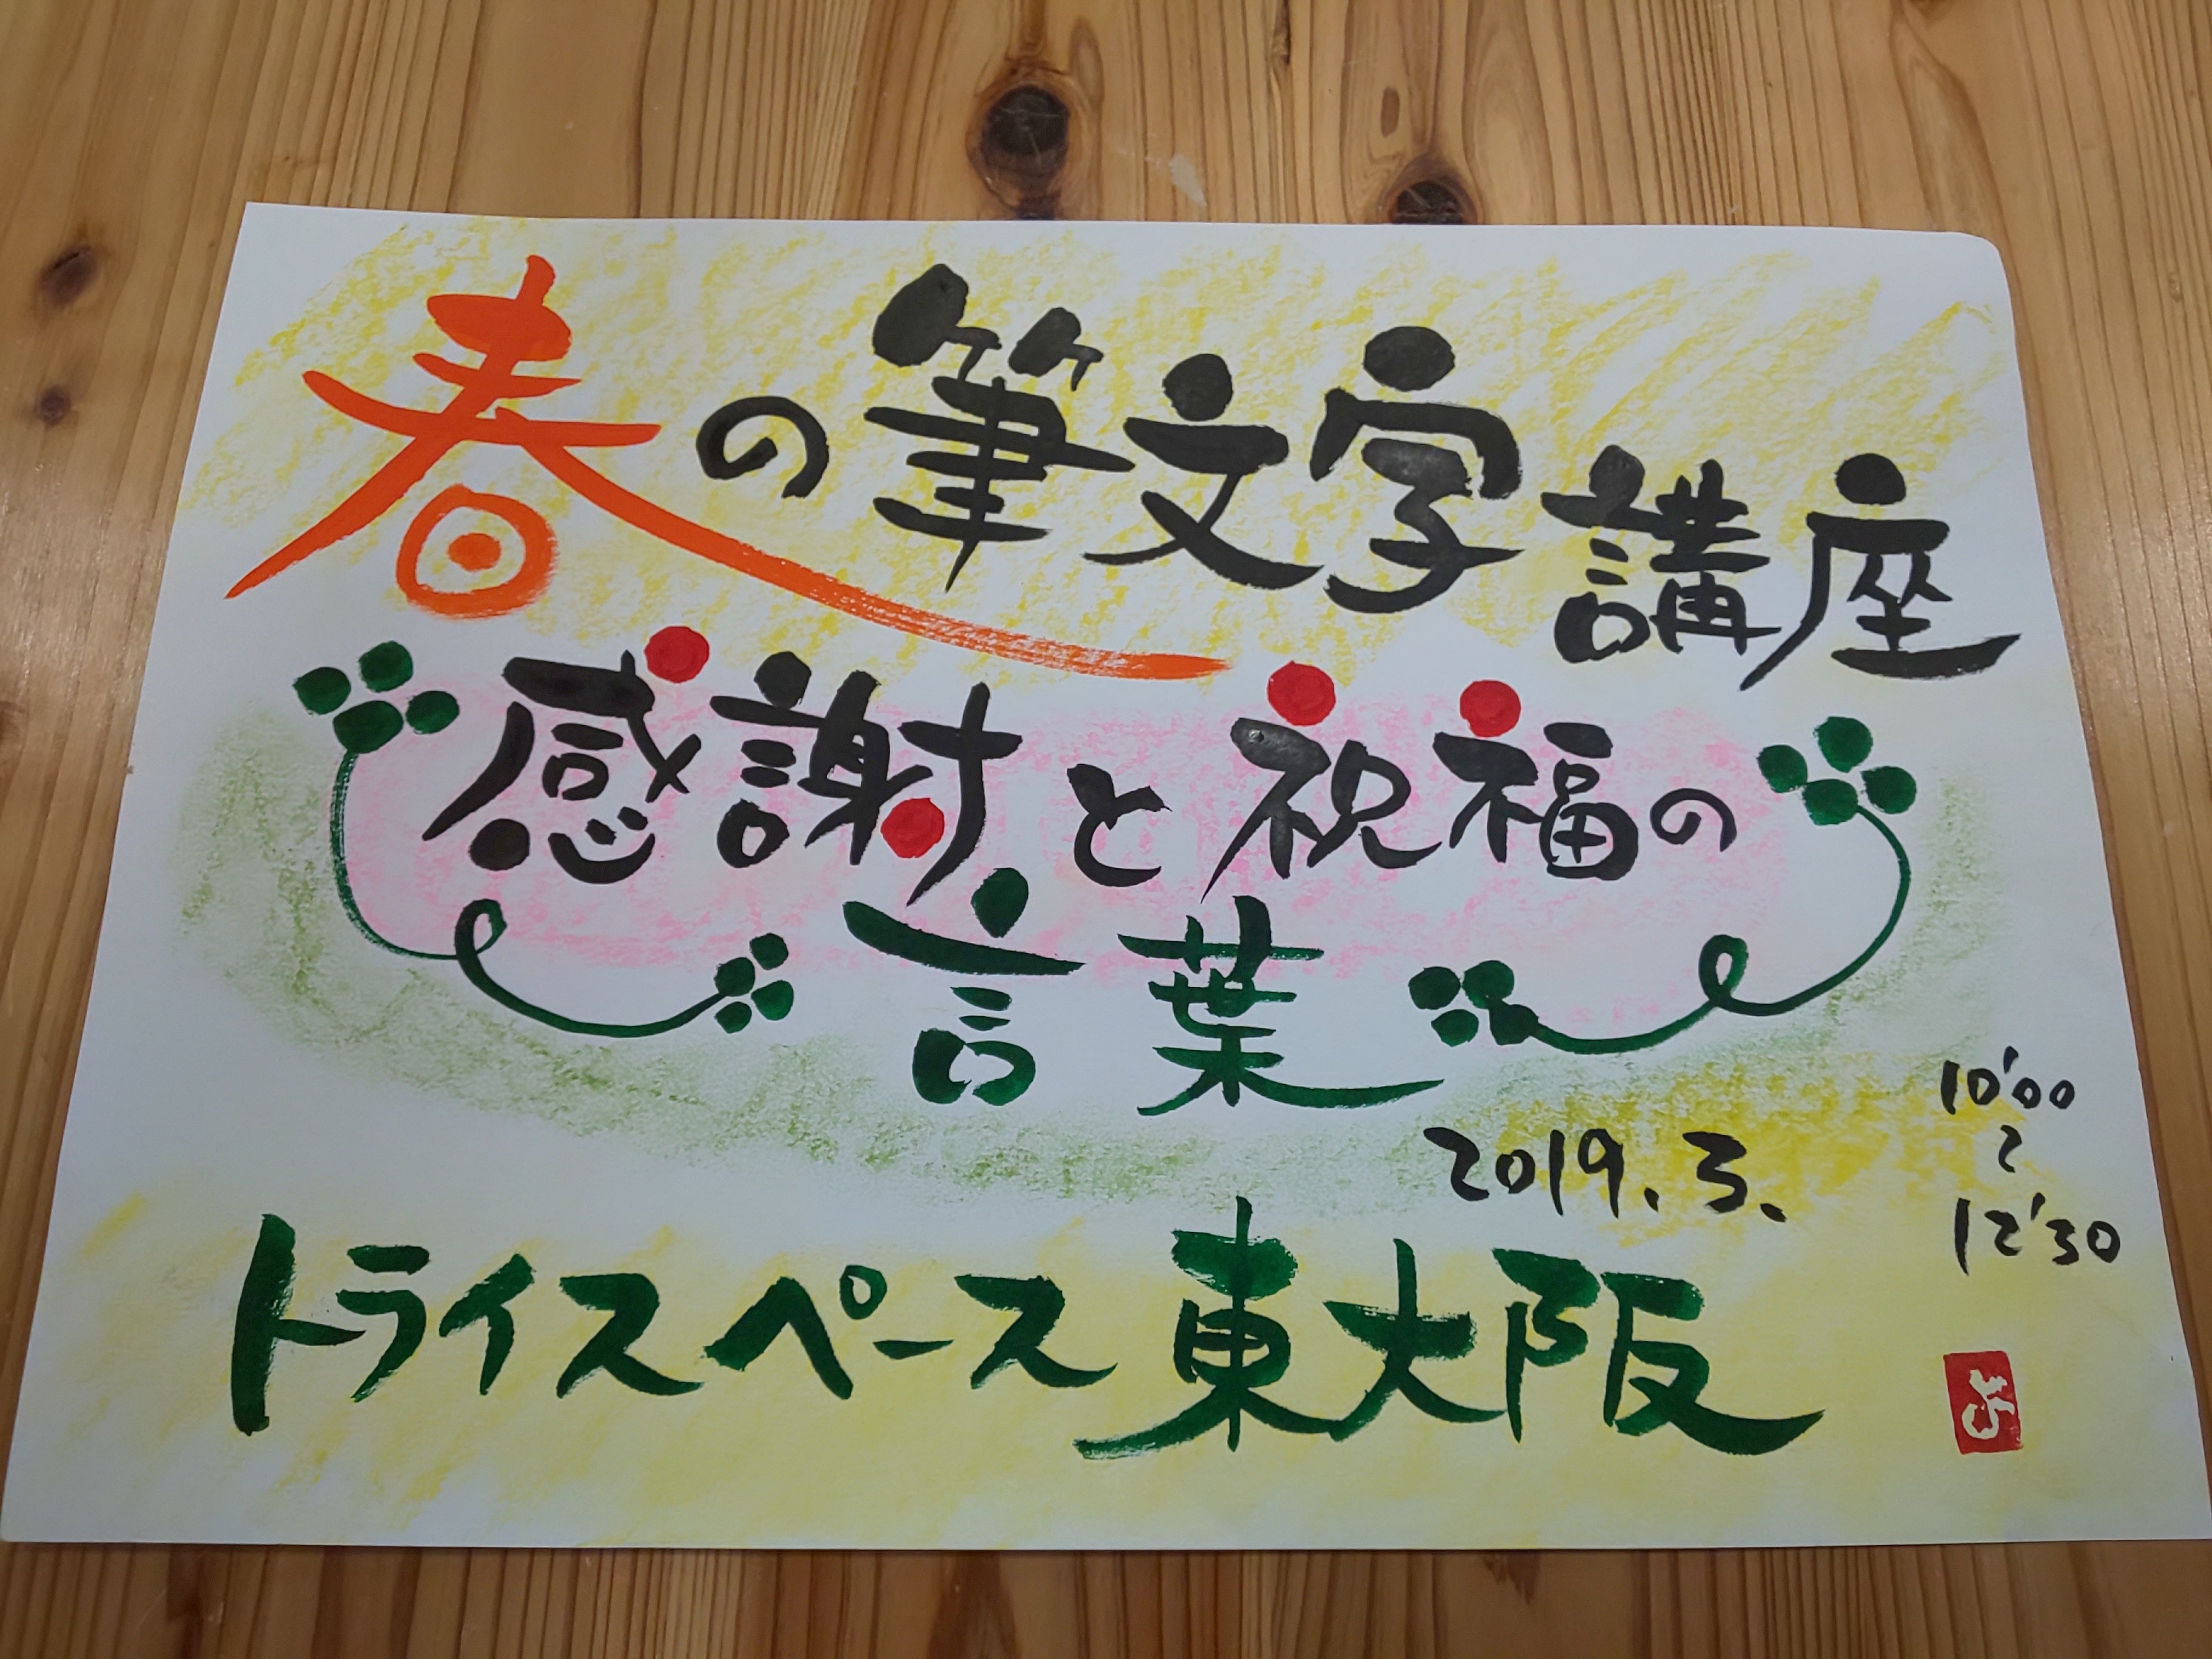 春の筆文字講座 感謝と祝福の言葉 イベント情報 トライスペース東大阪